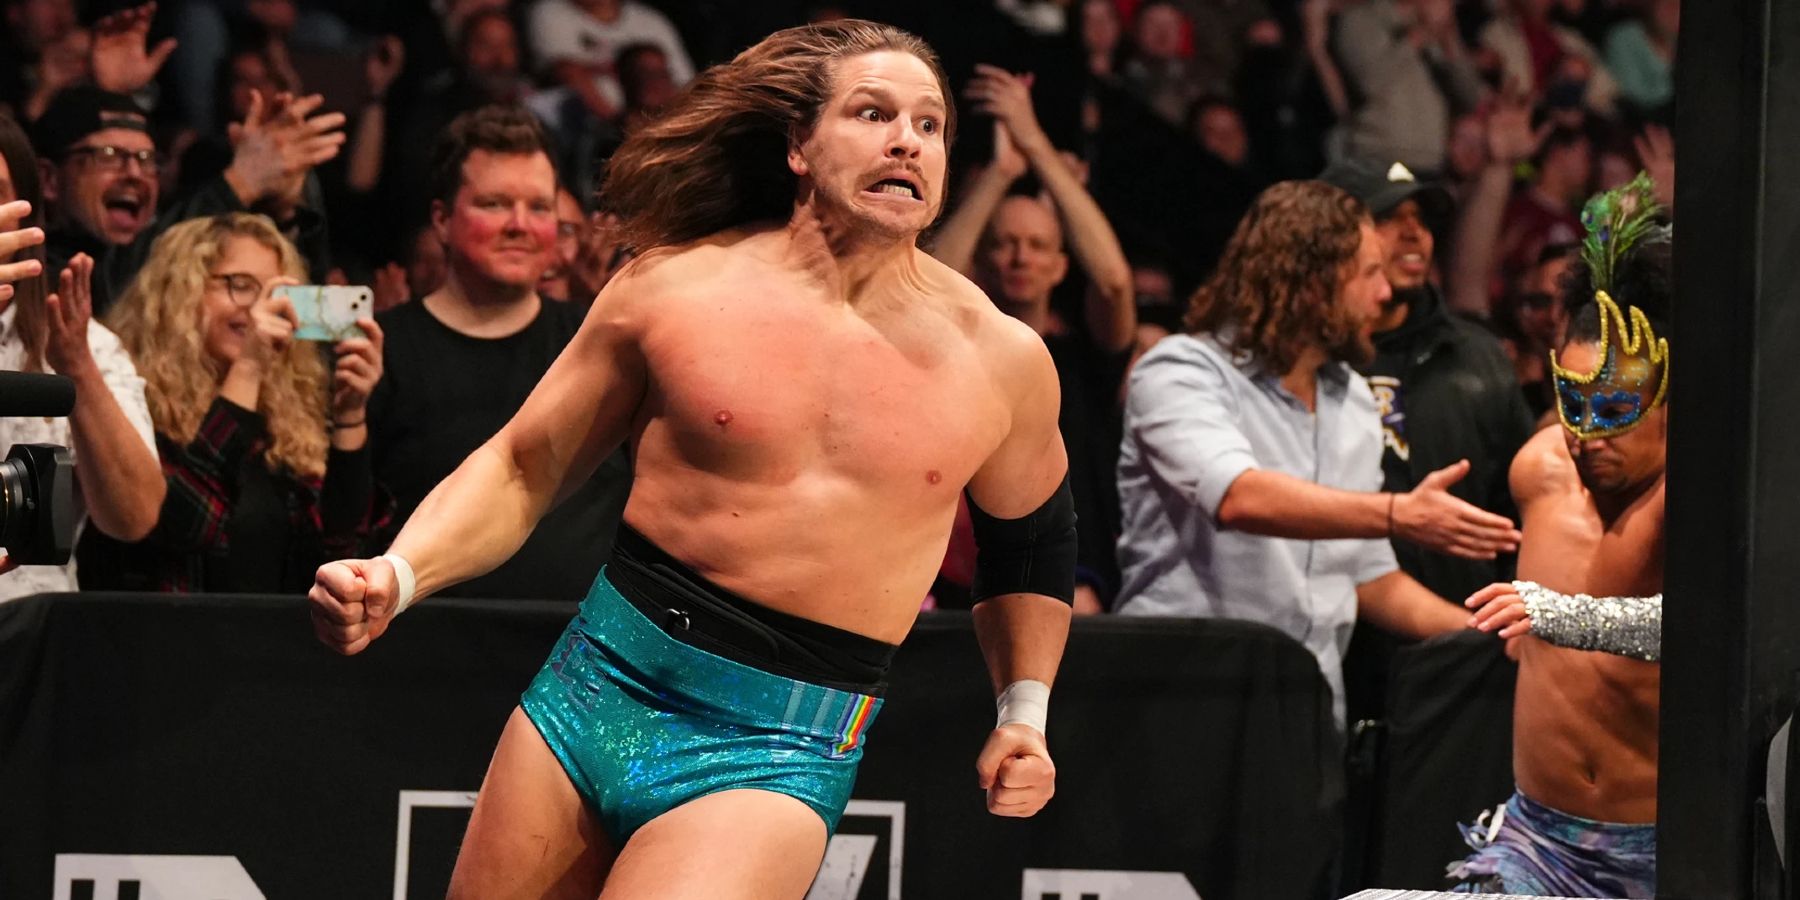 Dalton Castle tenta ultrapassar Chris Jericho durante uma partida pelo ROH World Championship em outubro de 2022.